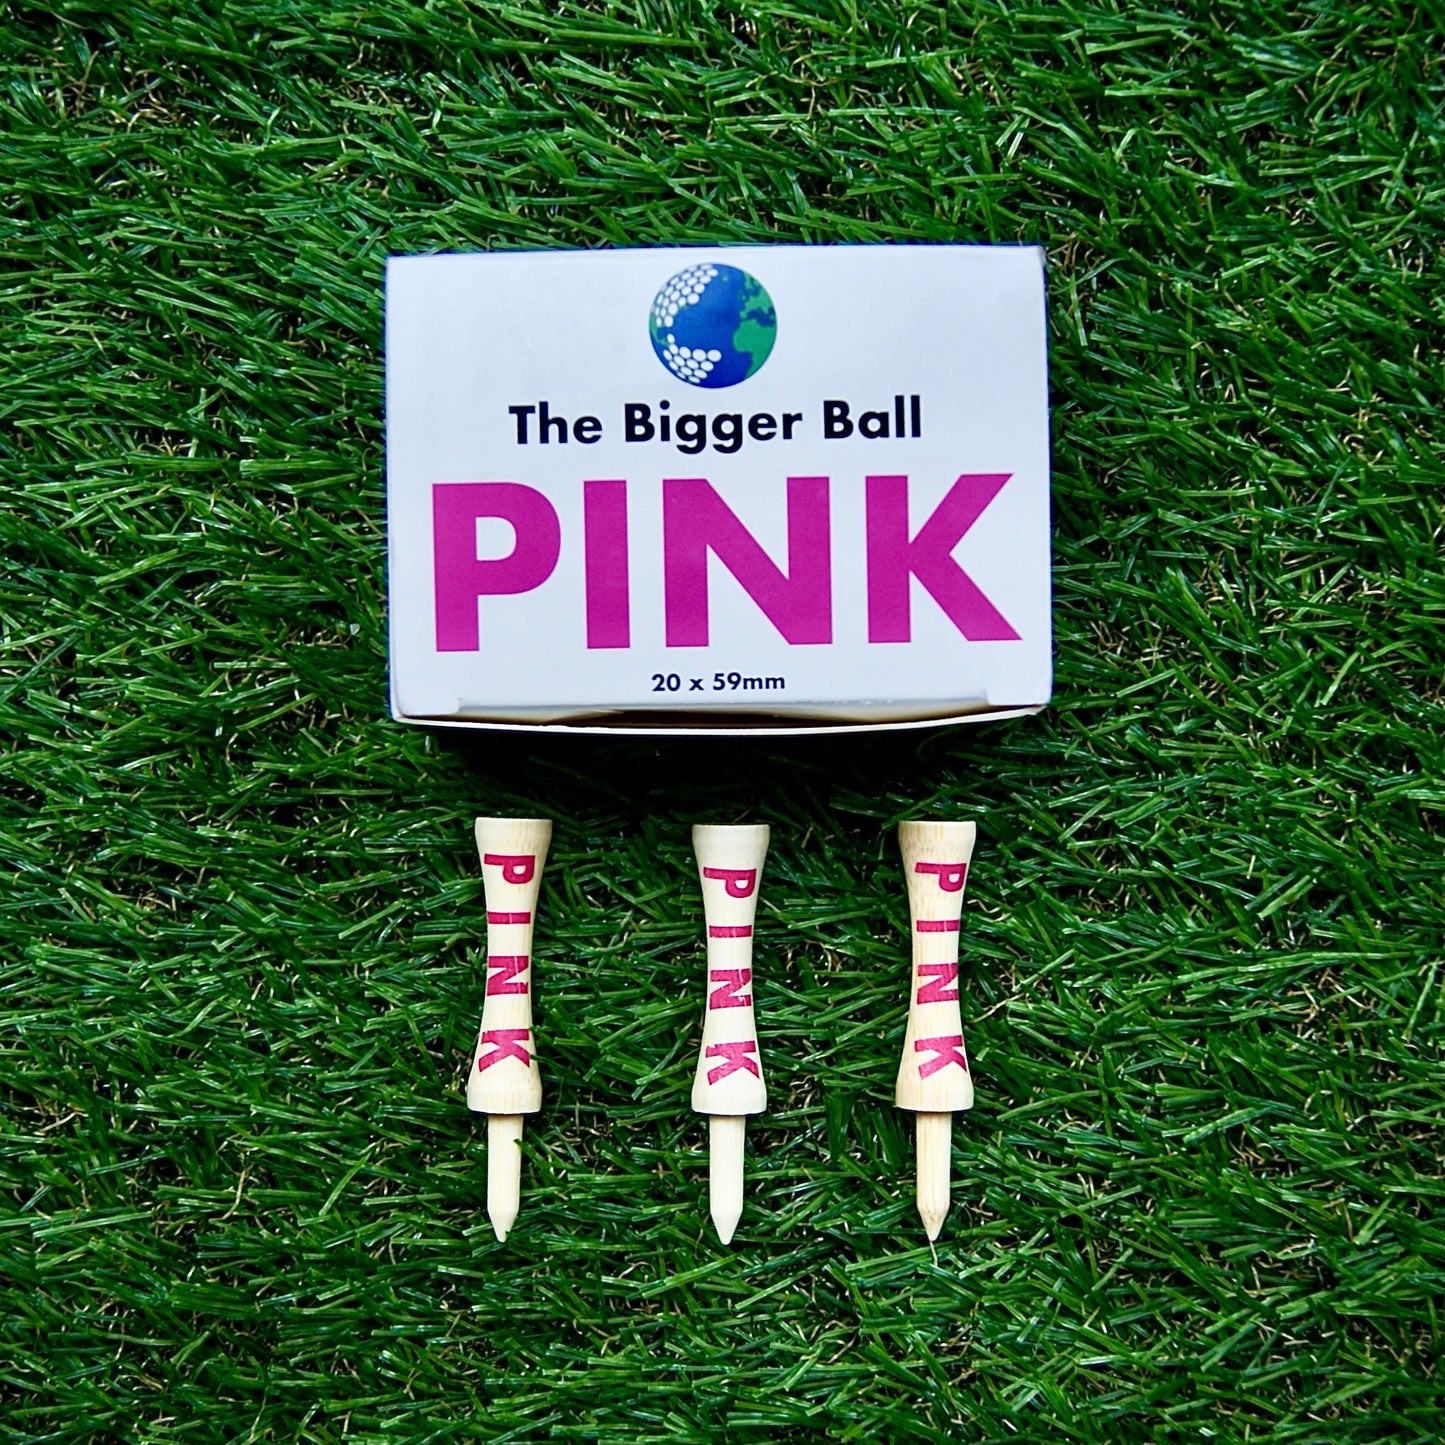 Pink golf tees